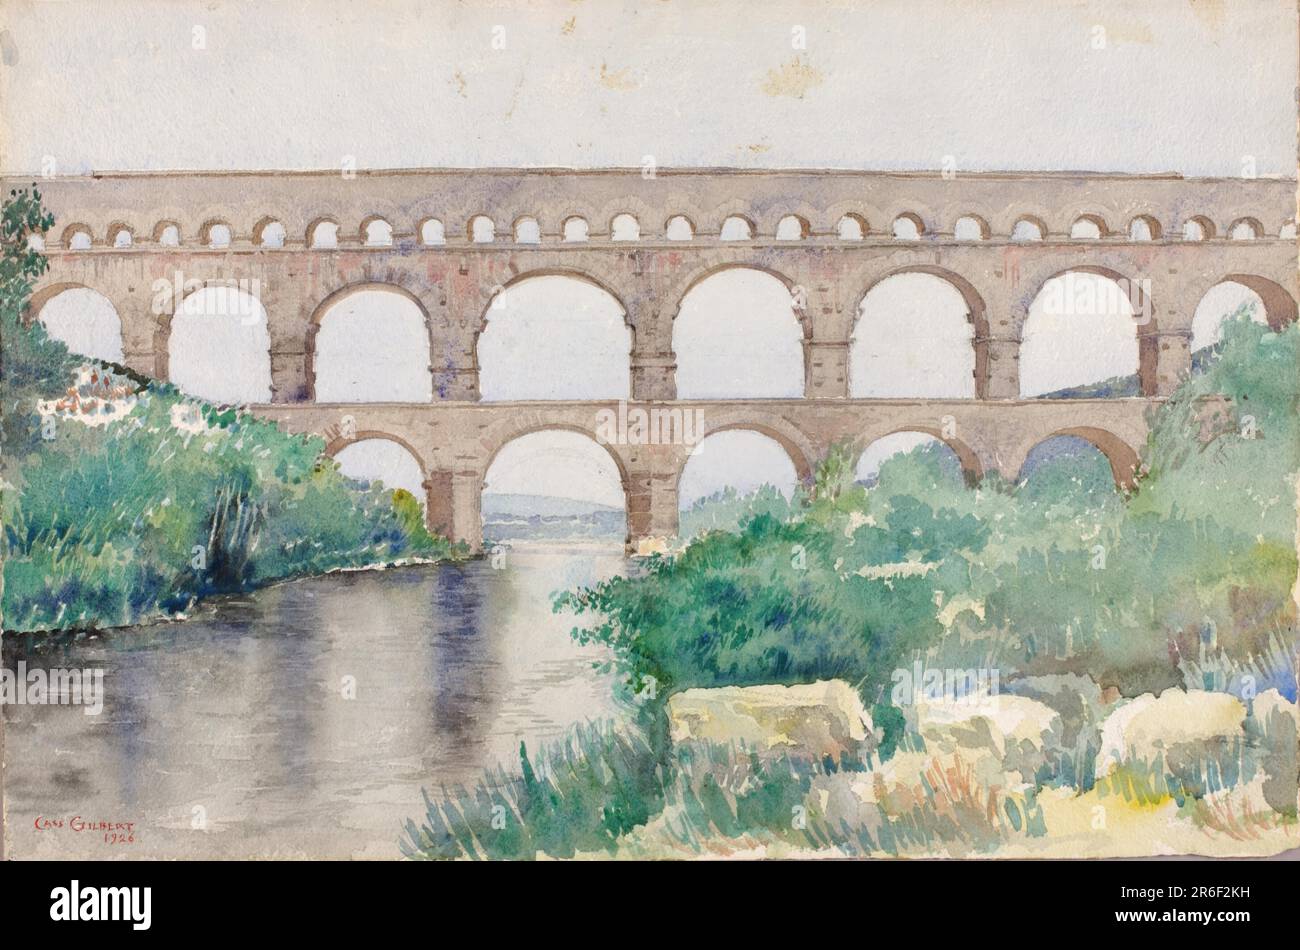 Aquädukt. Datum: N. d. Aquarell. Museum: Smithsonian American Art Museum. Stockfoto